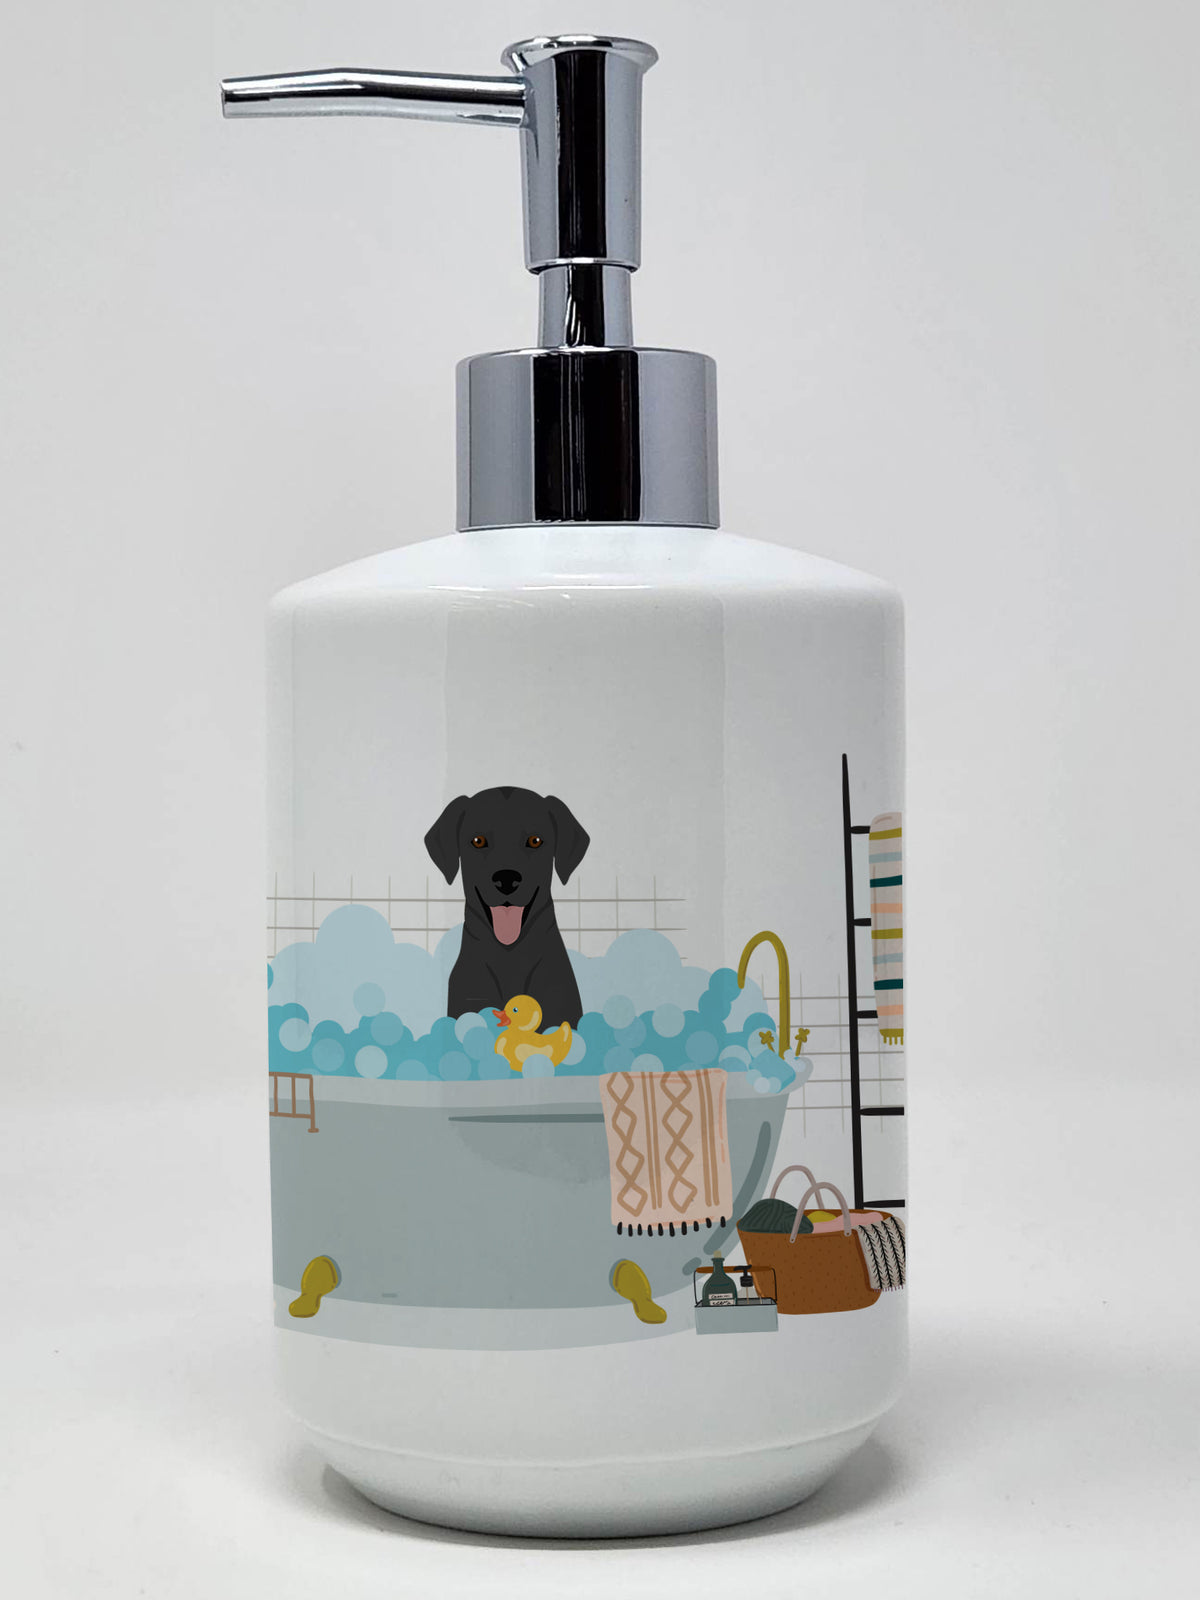 Buy this Black Labrador Retriever Ceramic Soap Dispenser